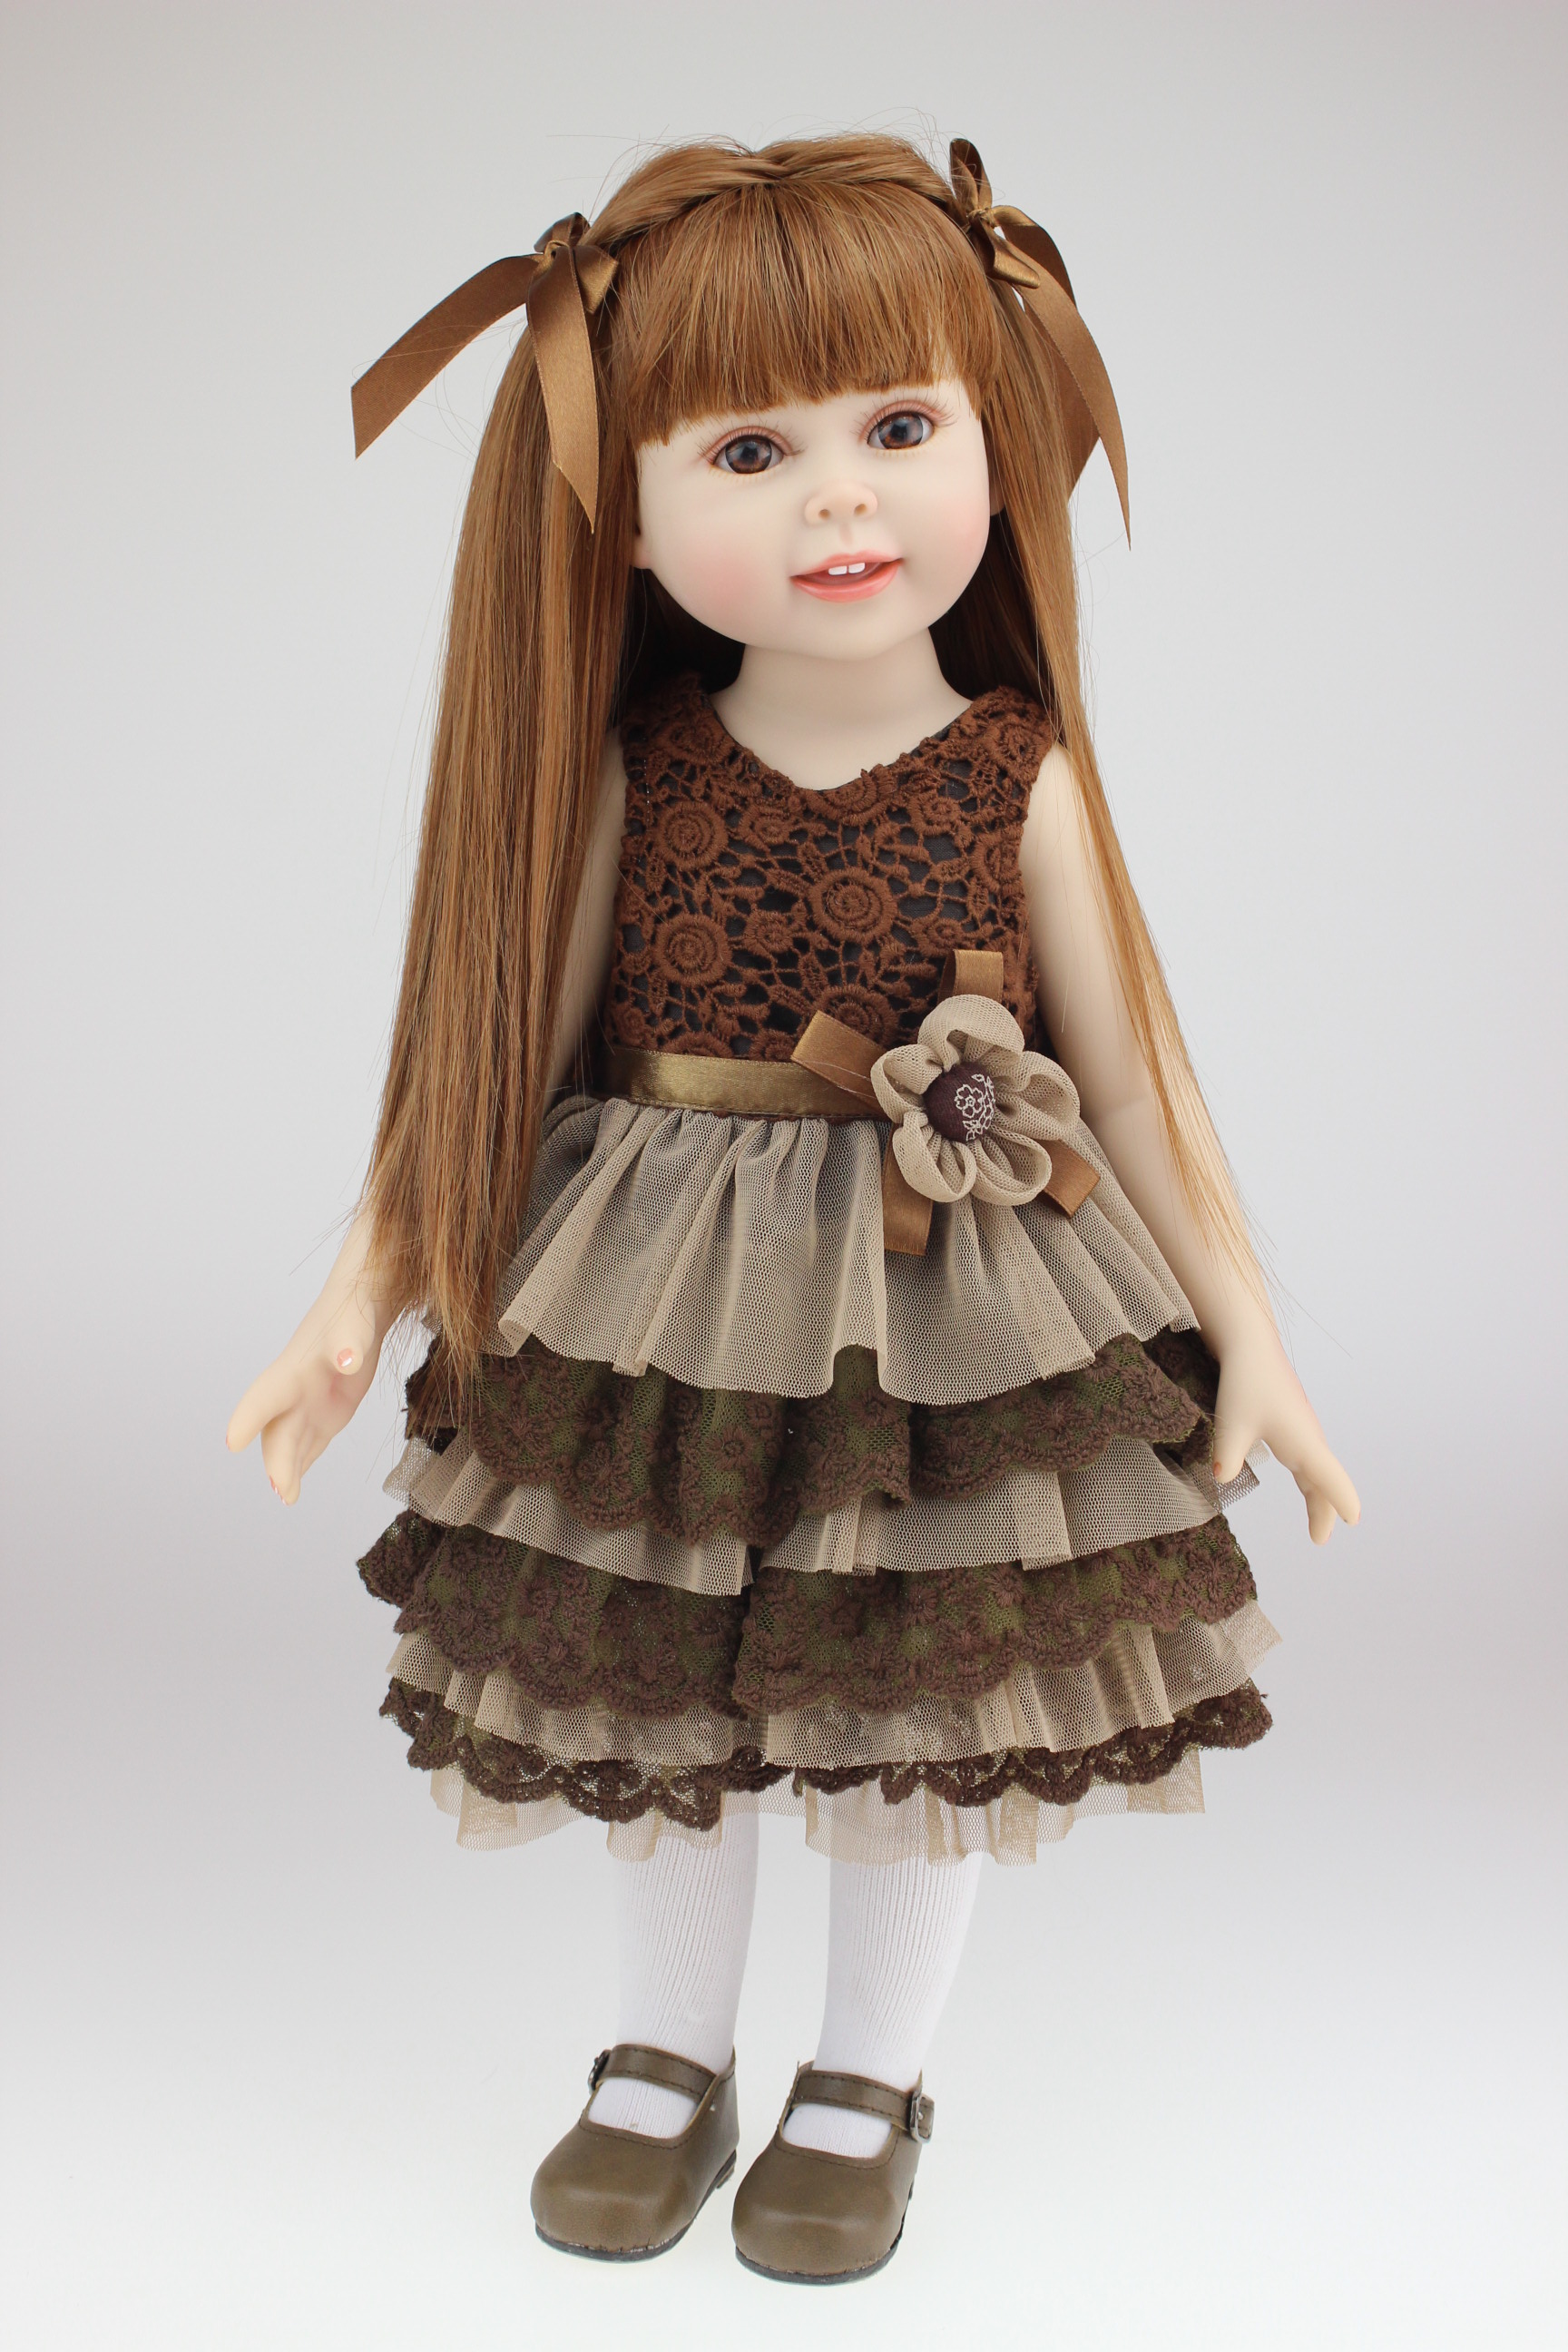 18 дюймов американская девушка мода кукла реалистичные с красивой юбкой подарок для ребенка Рождество и день рождения